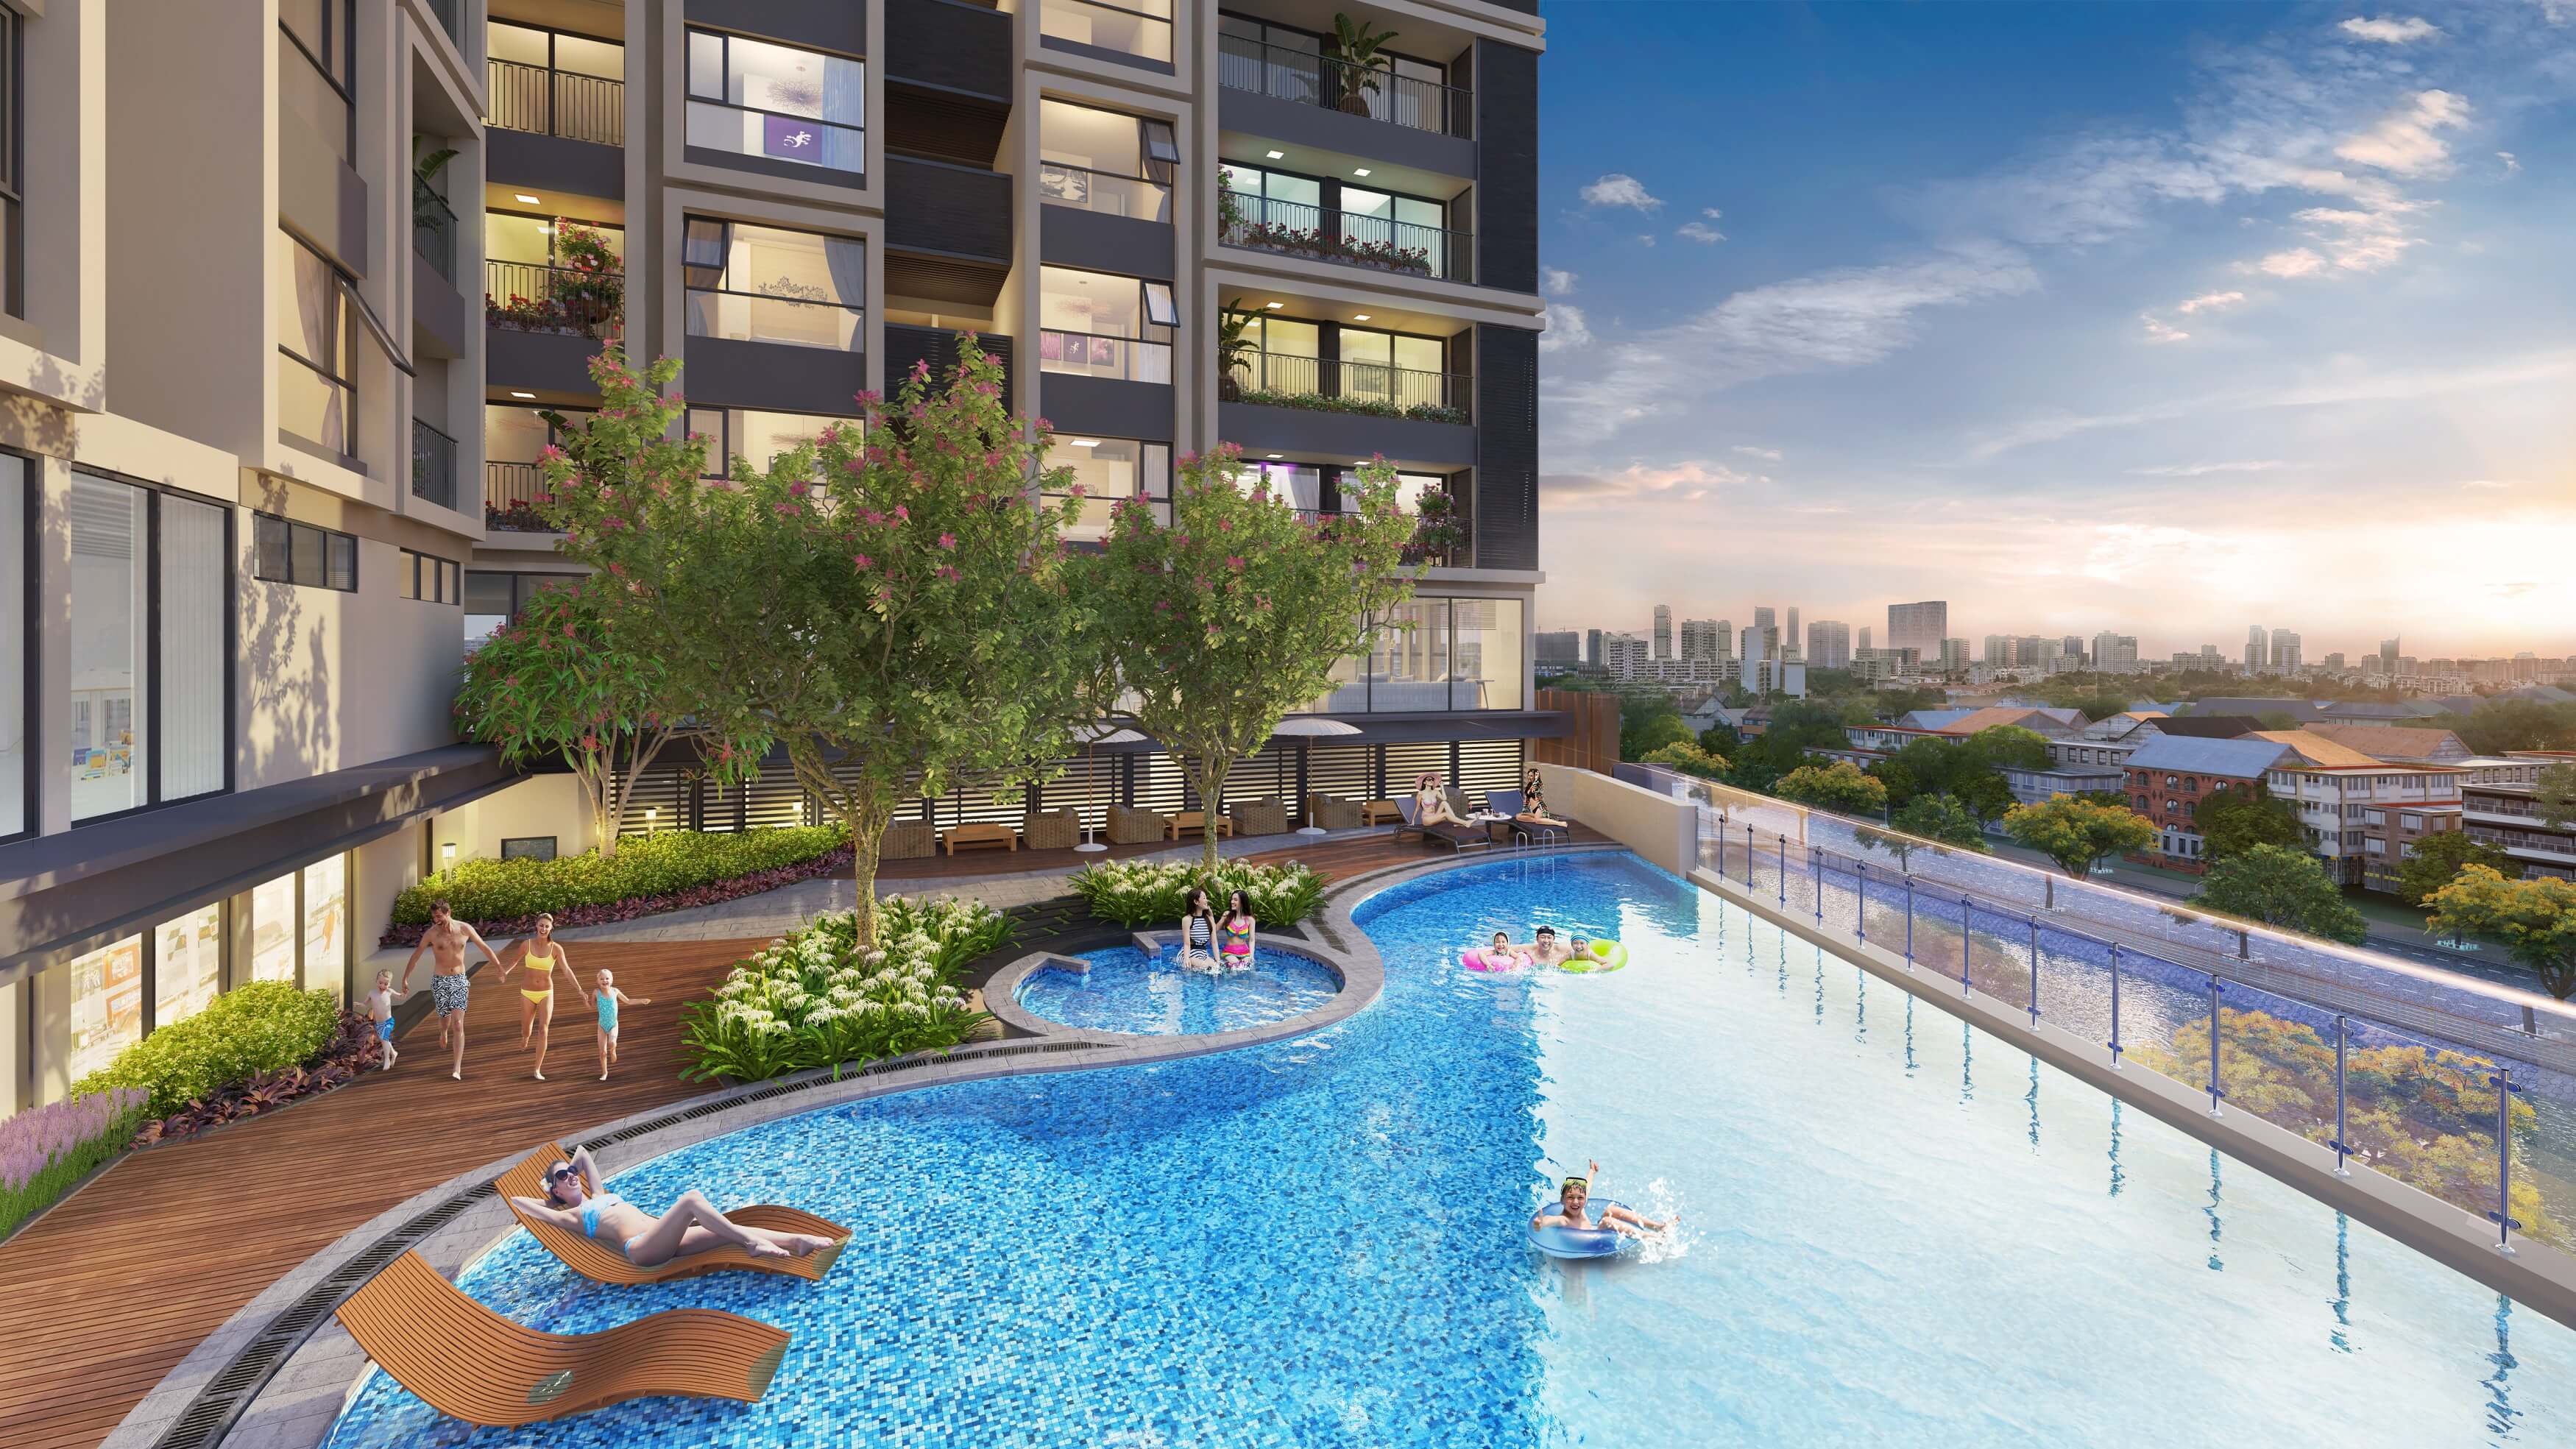 Chủ đầu tư Hinode City chấp nhận giảm diện tích xây dựng căn hộ  để thiết kế bể bơi vô cực tại tầng 4 các block nhà